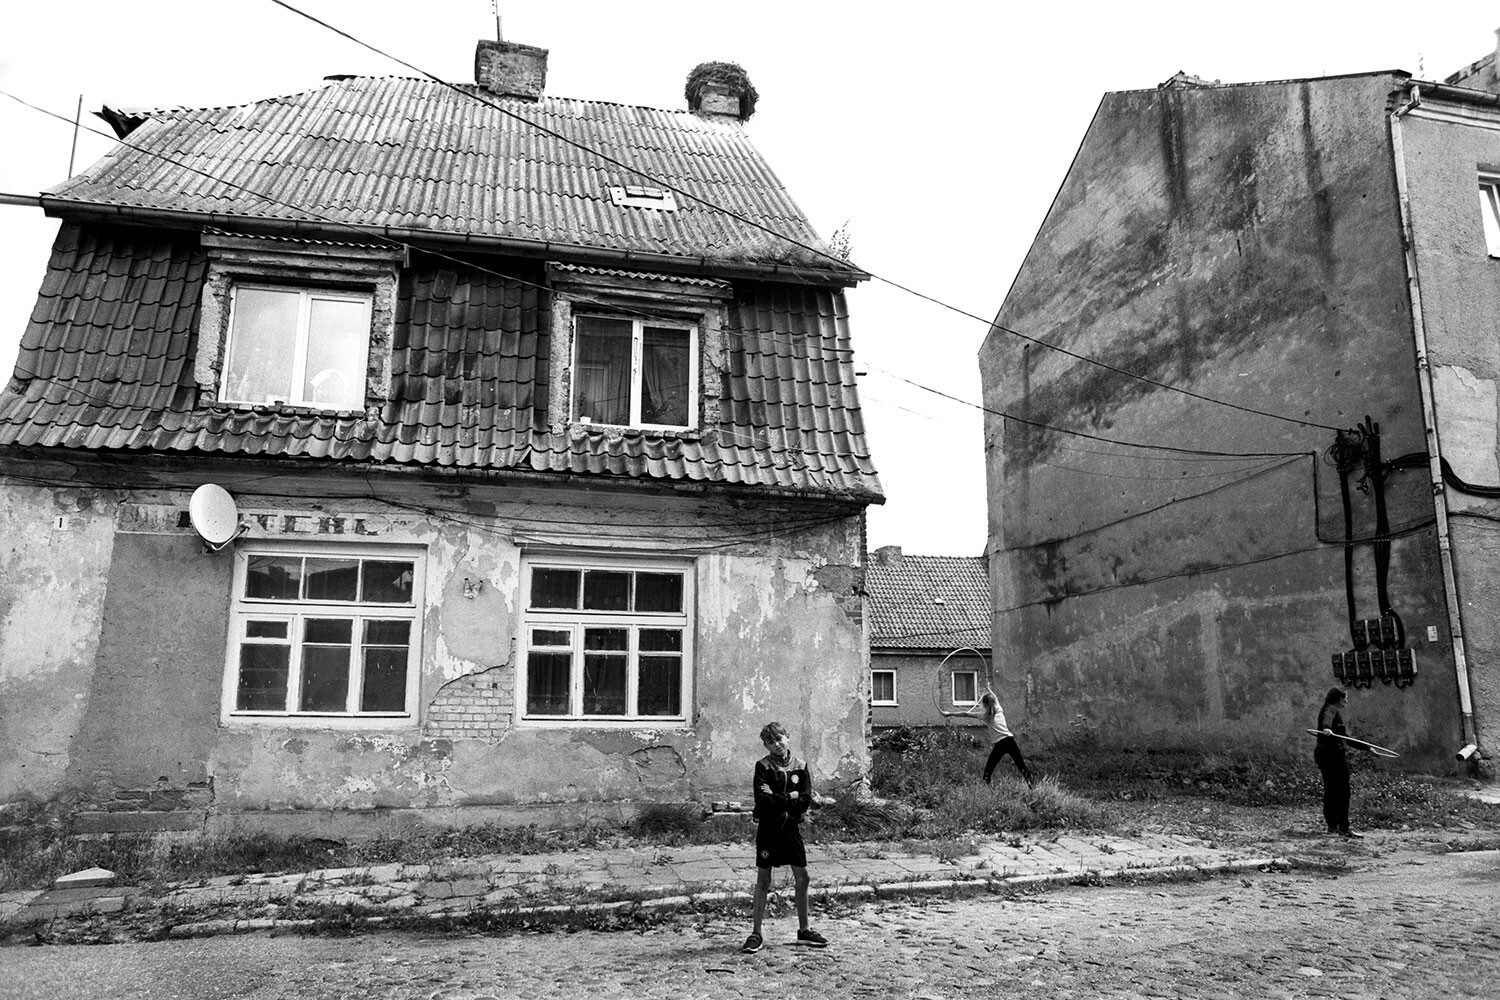 Посёлок Железнодорожный, Калининградская область, 2018 год. Фотограф Борис Регистер